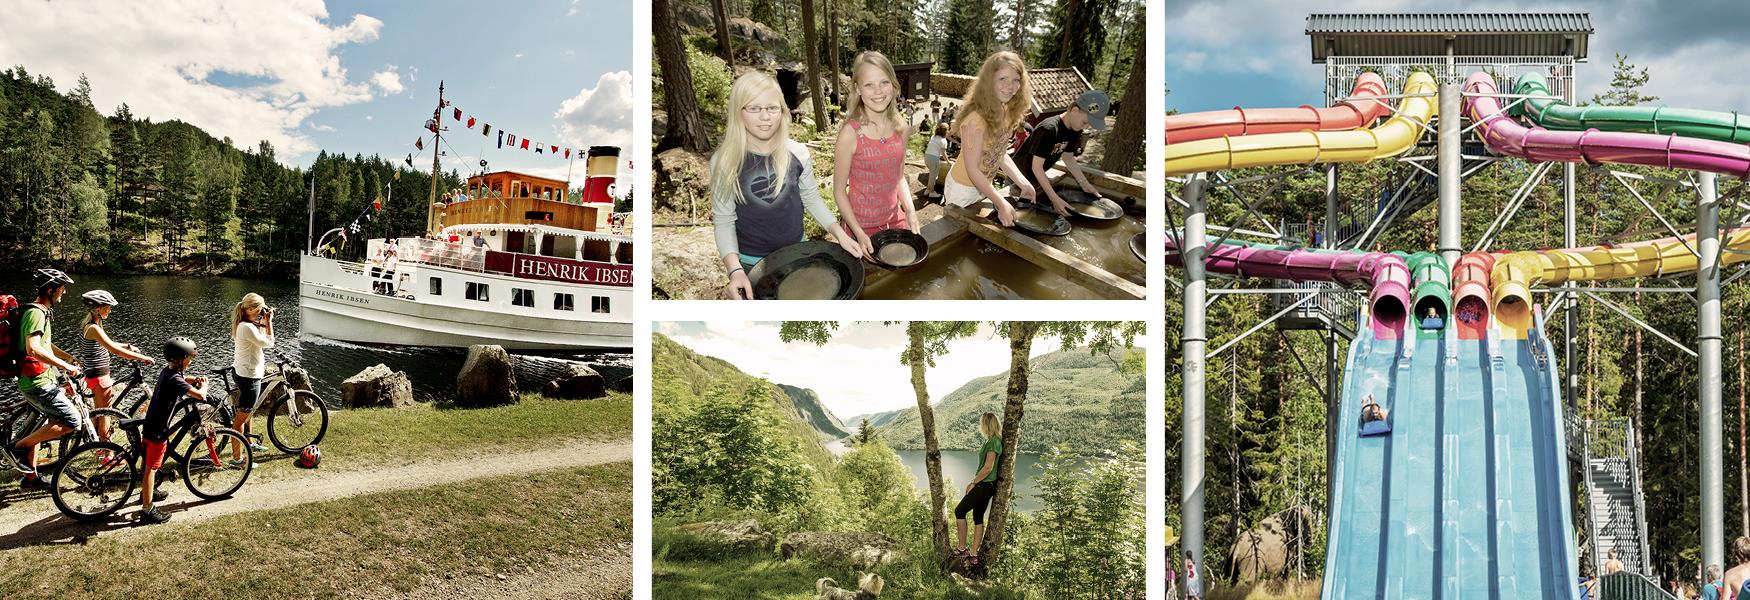 Det finnes mange spennende aktiviteter som kan oppleves om sommeren i Telemark